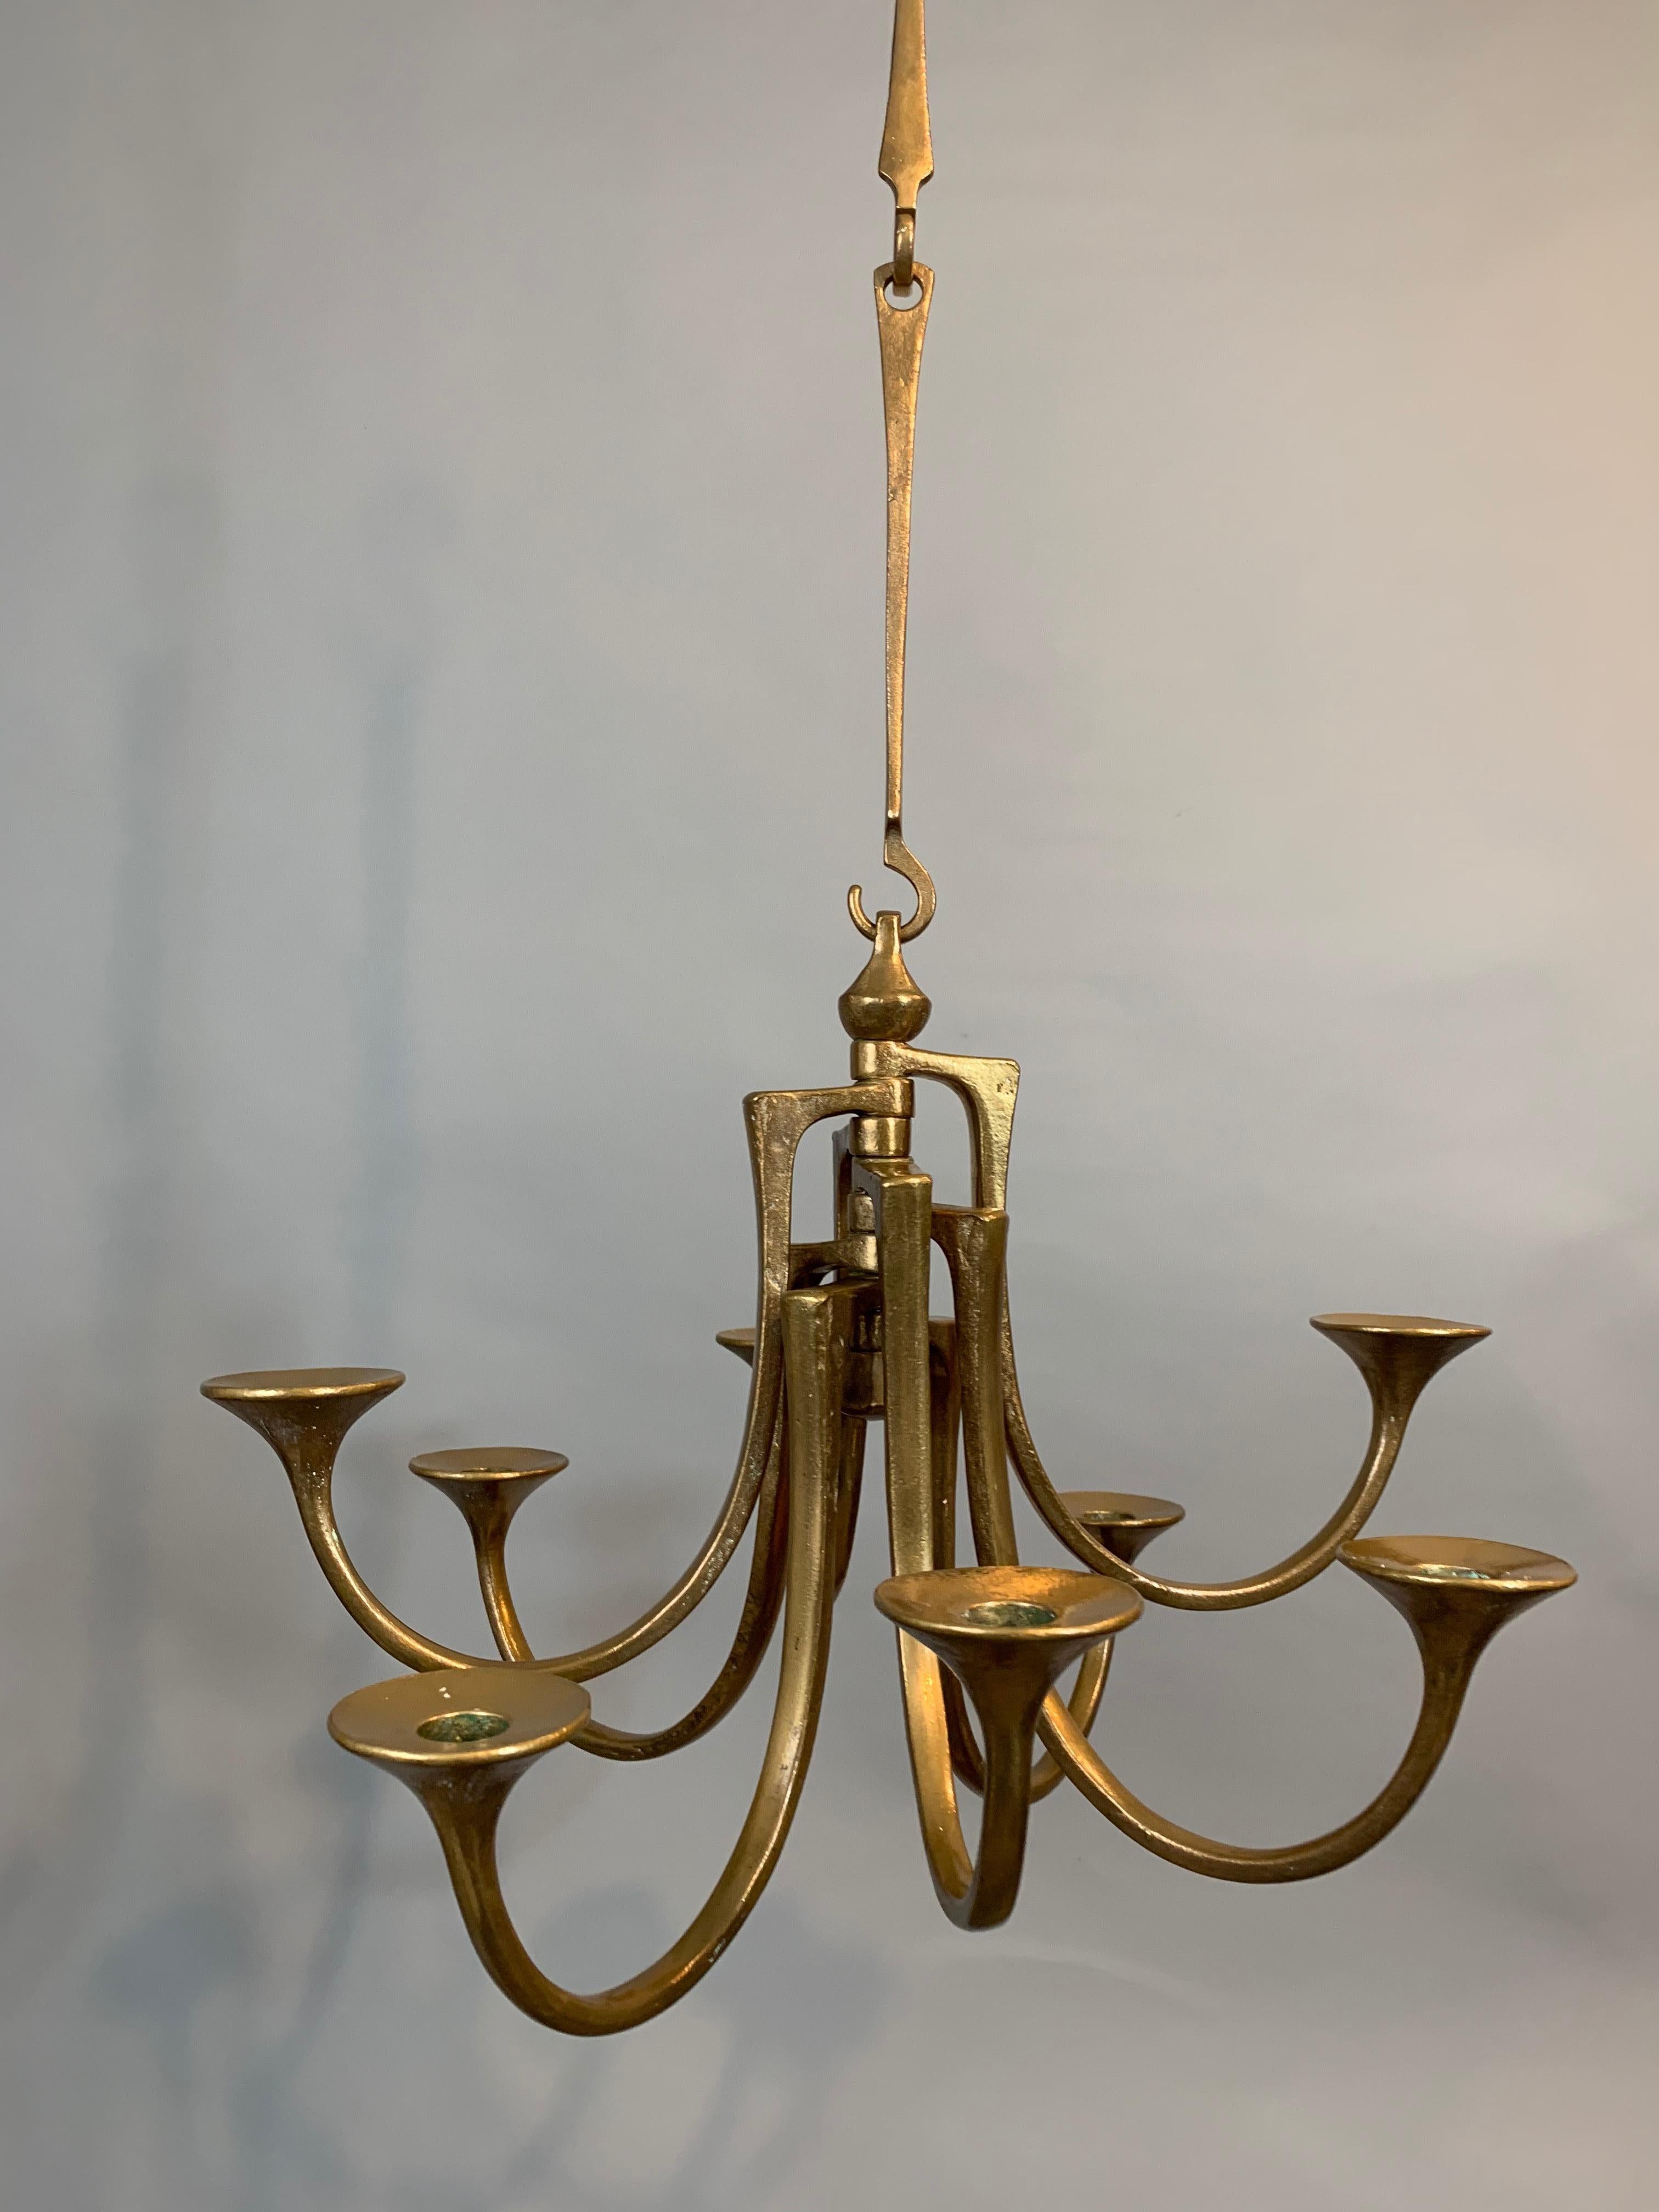 Hängende Harjes Metallkunst-Kerzenhalter aus Bronze, 1960er Jahre (20. Jahrhundert)